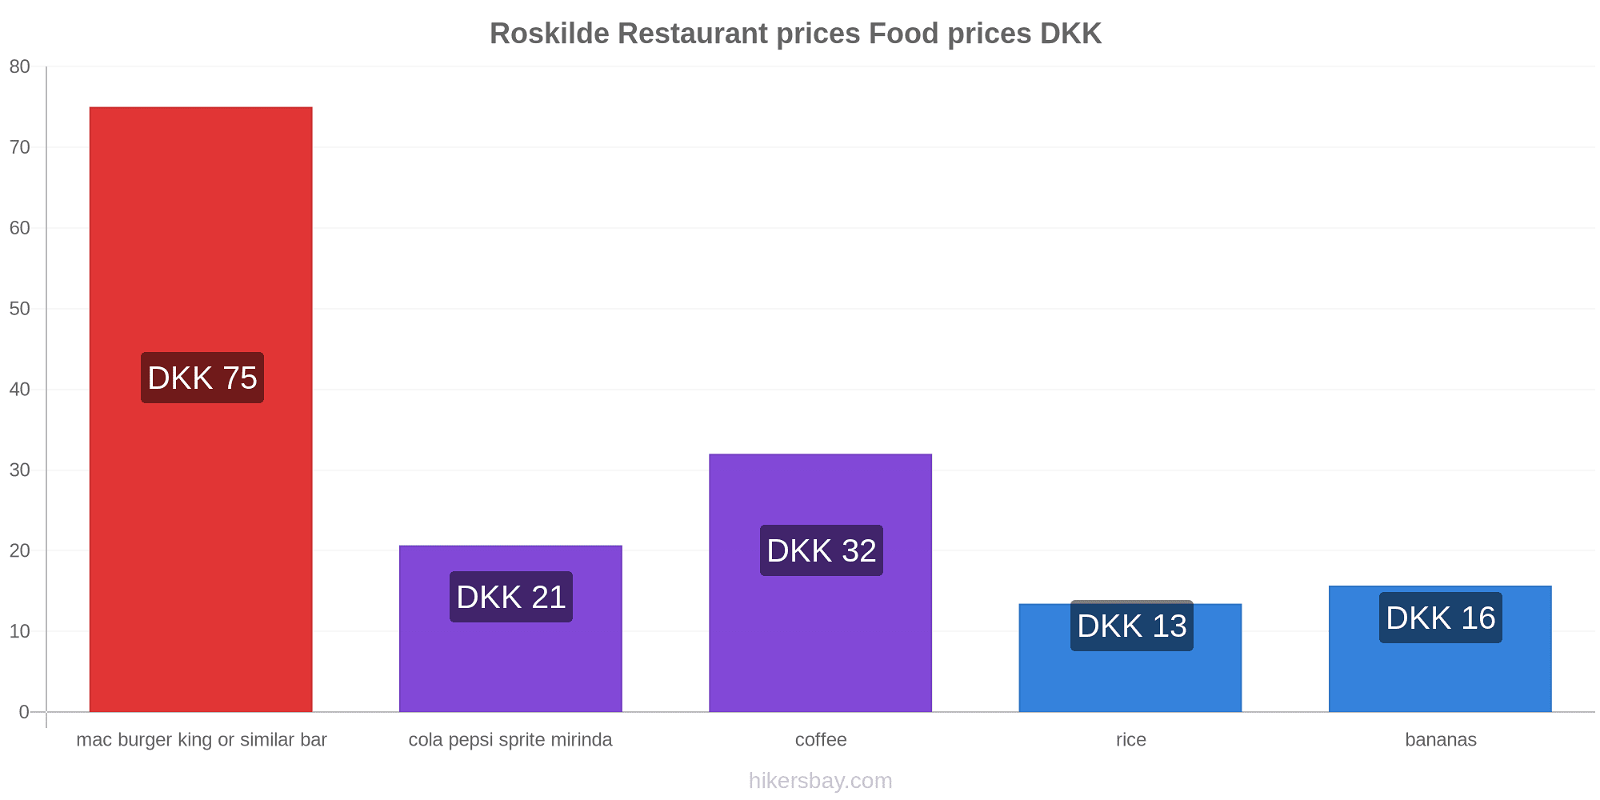 Roskilde price changes hikersbay.com